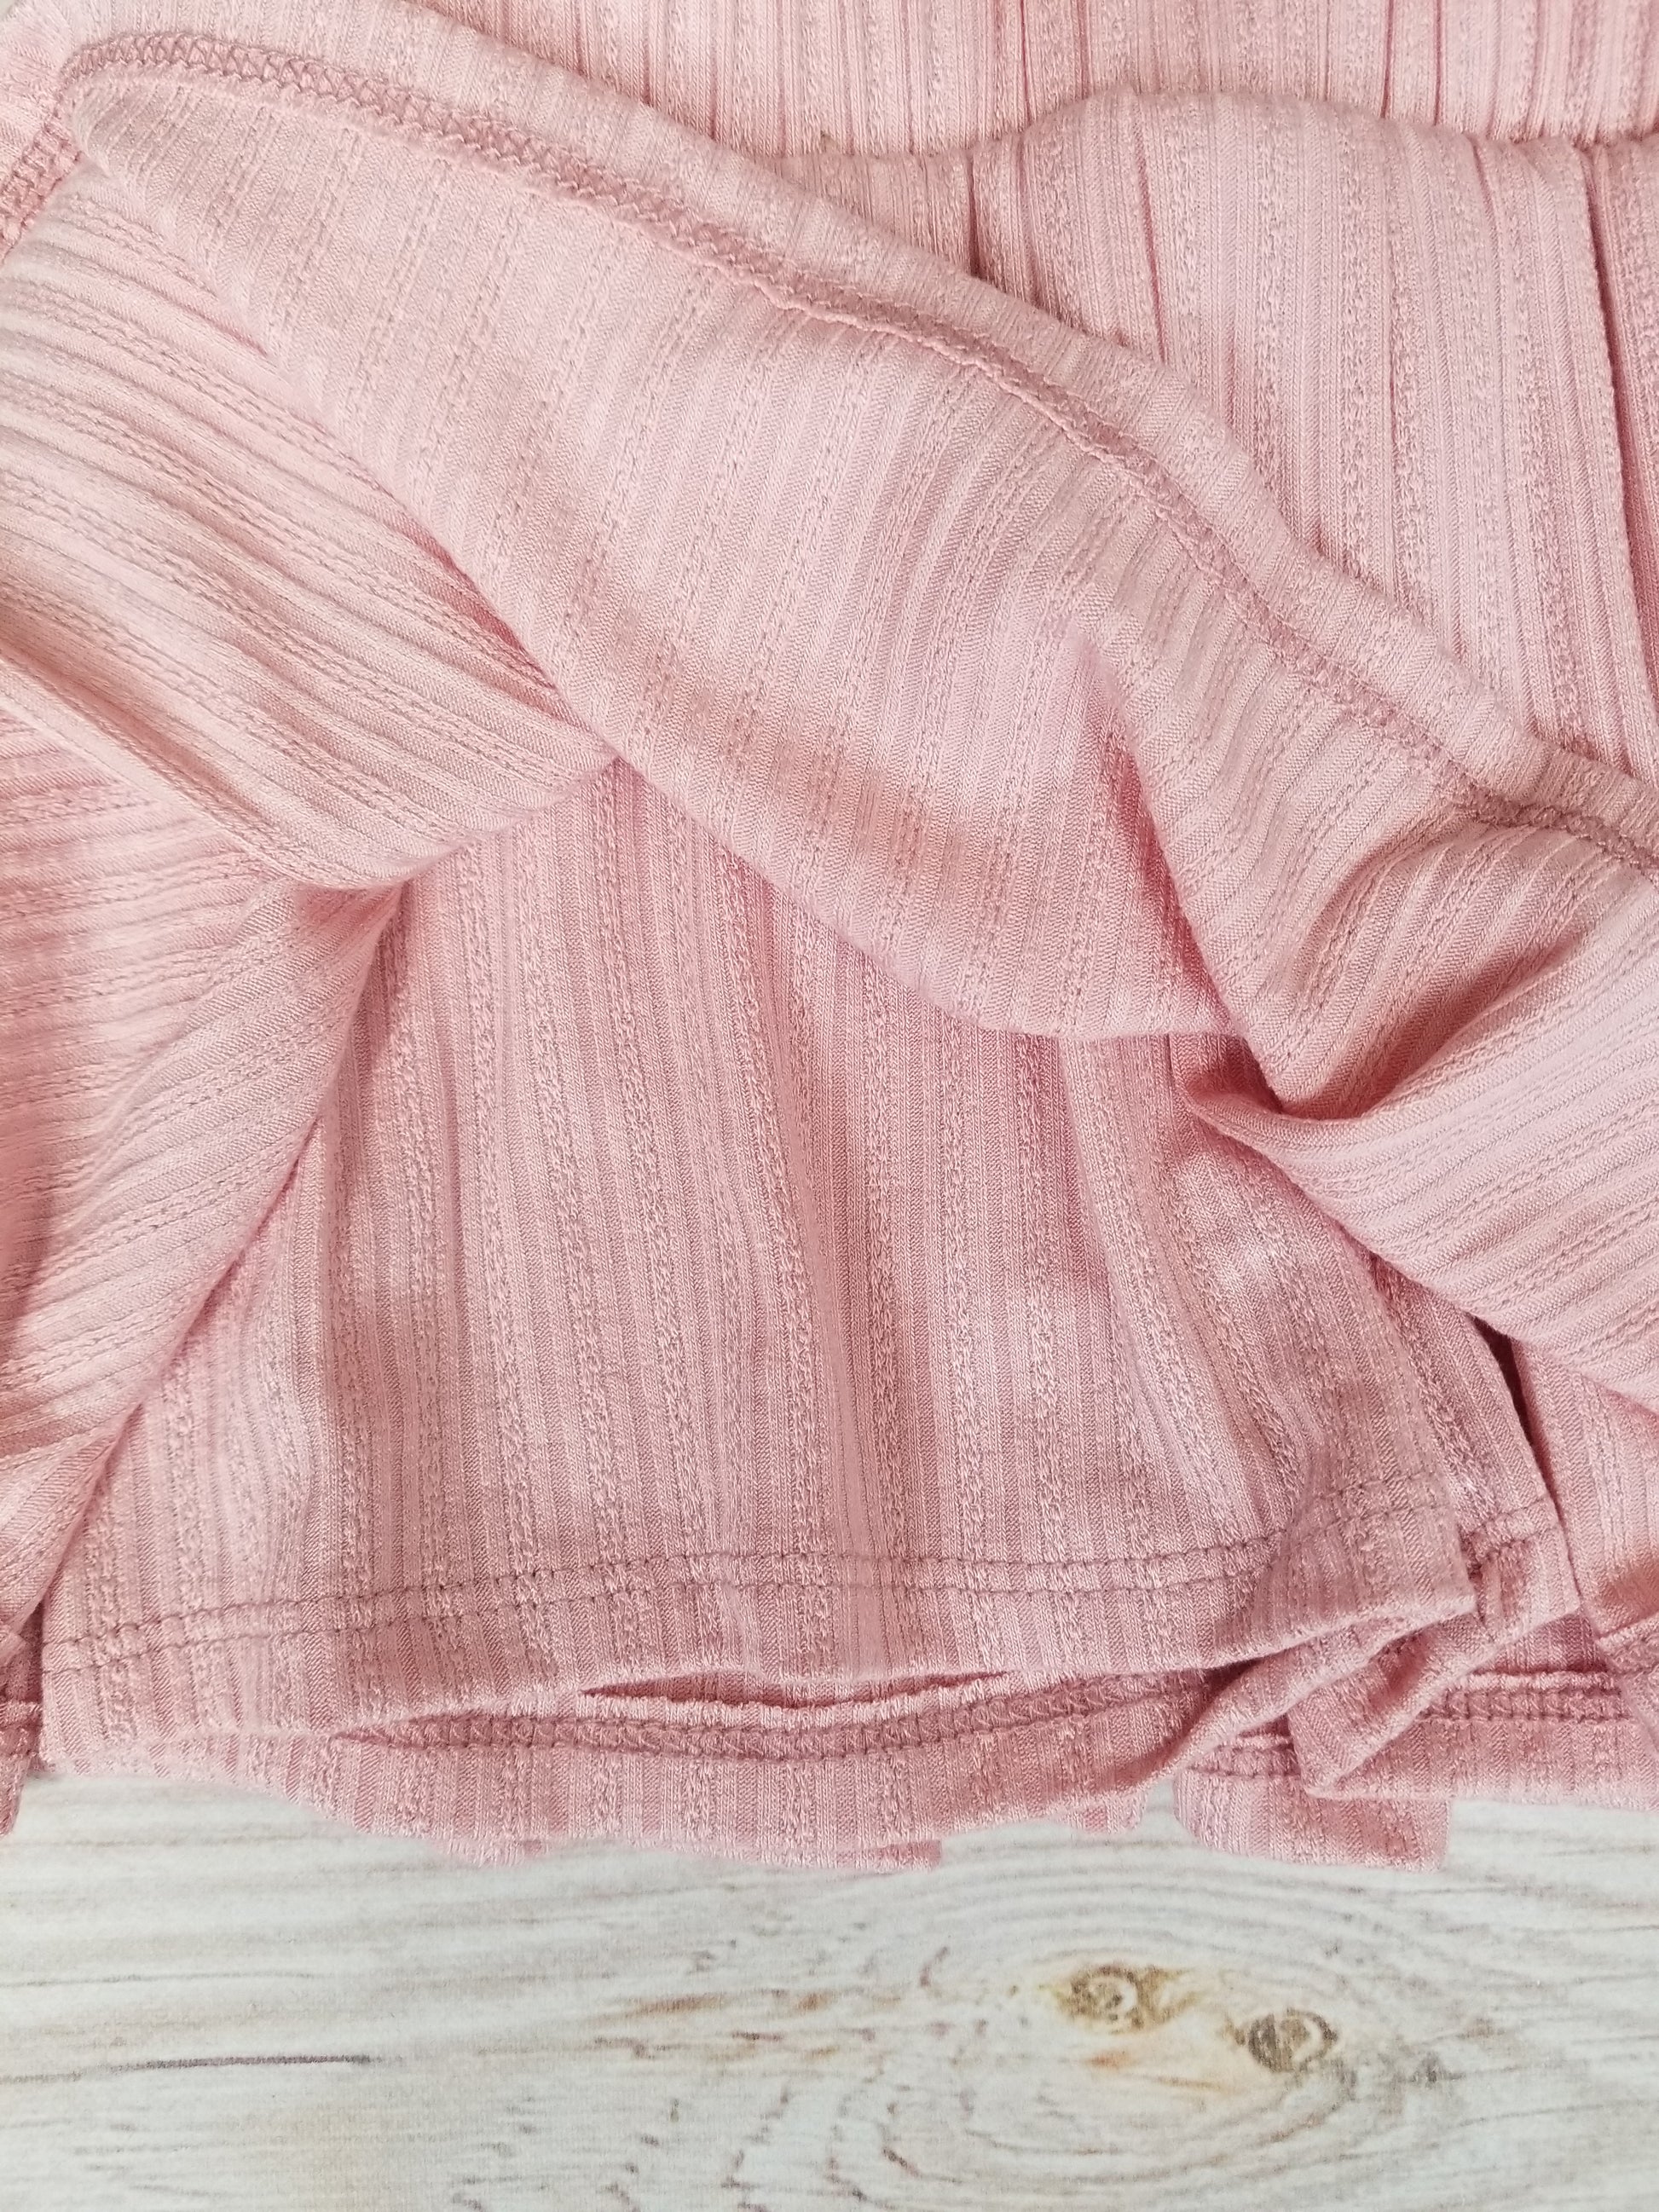 Erge Designs Blush Pink Romper Skort